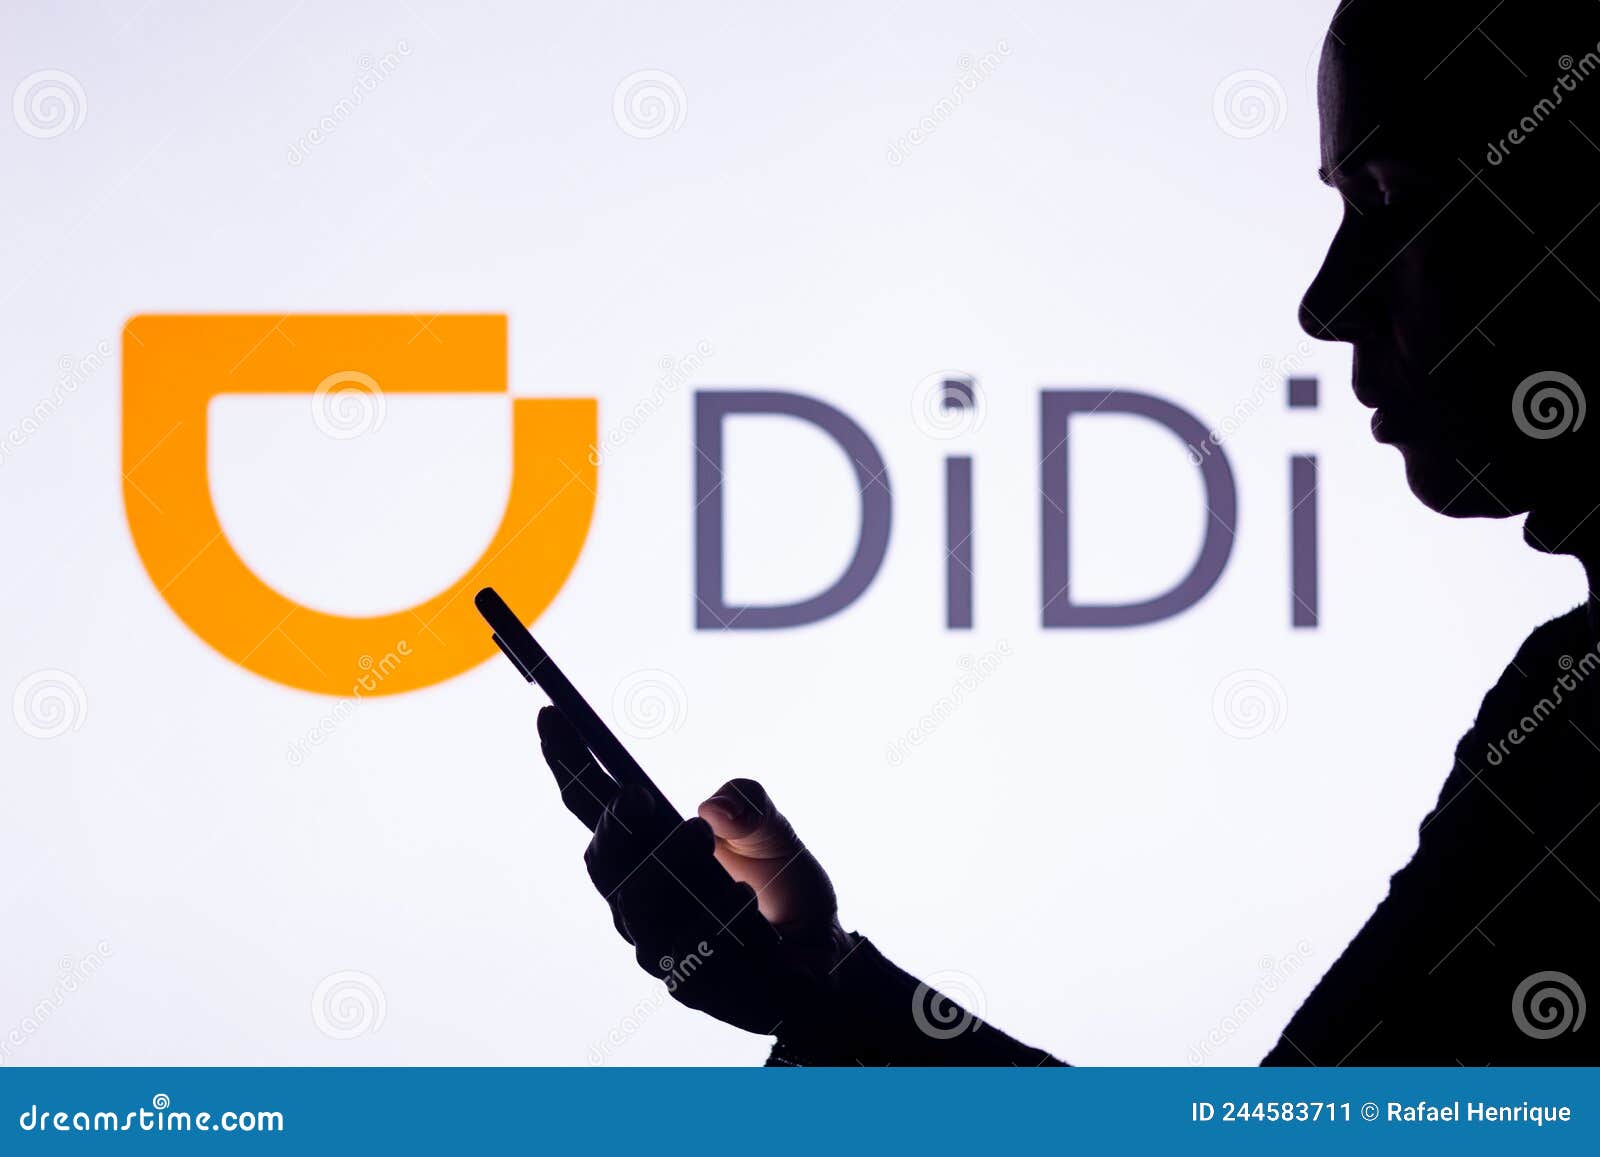 DiDi Global (DIDI) Stock Price, News & Info | The Motley Fool